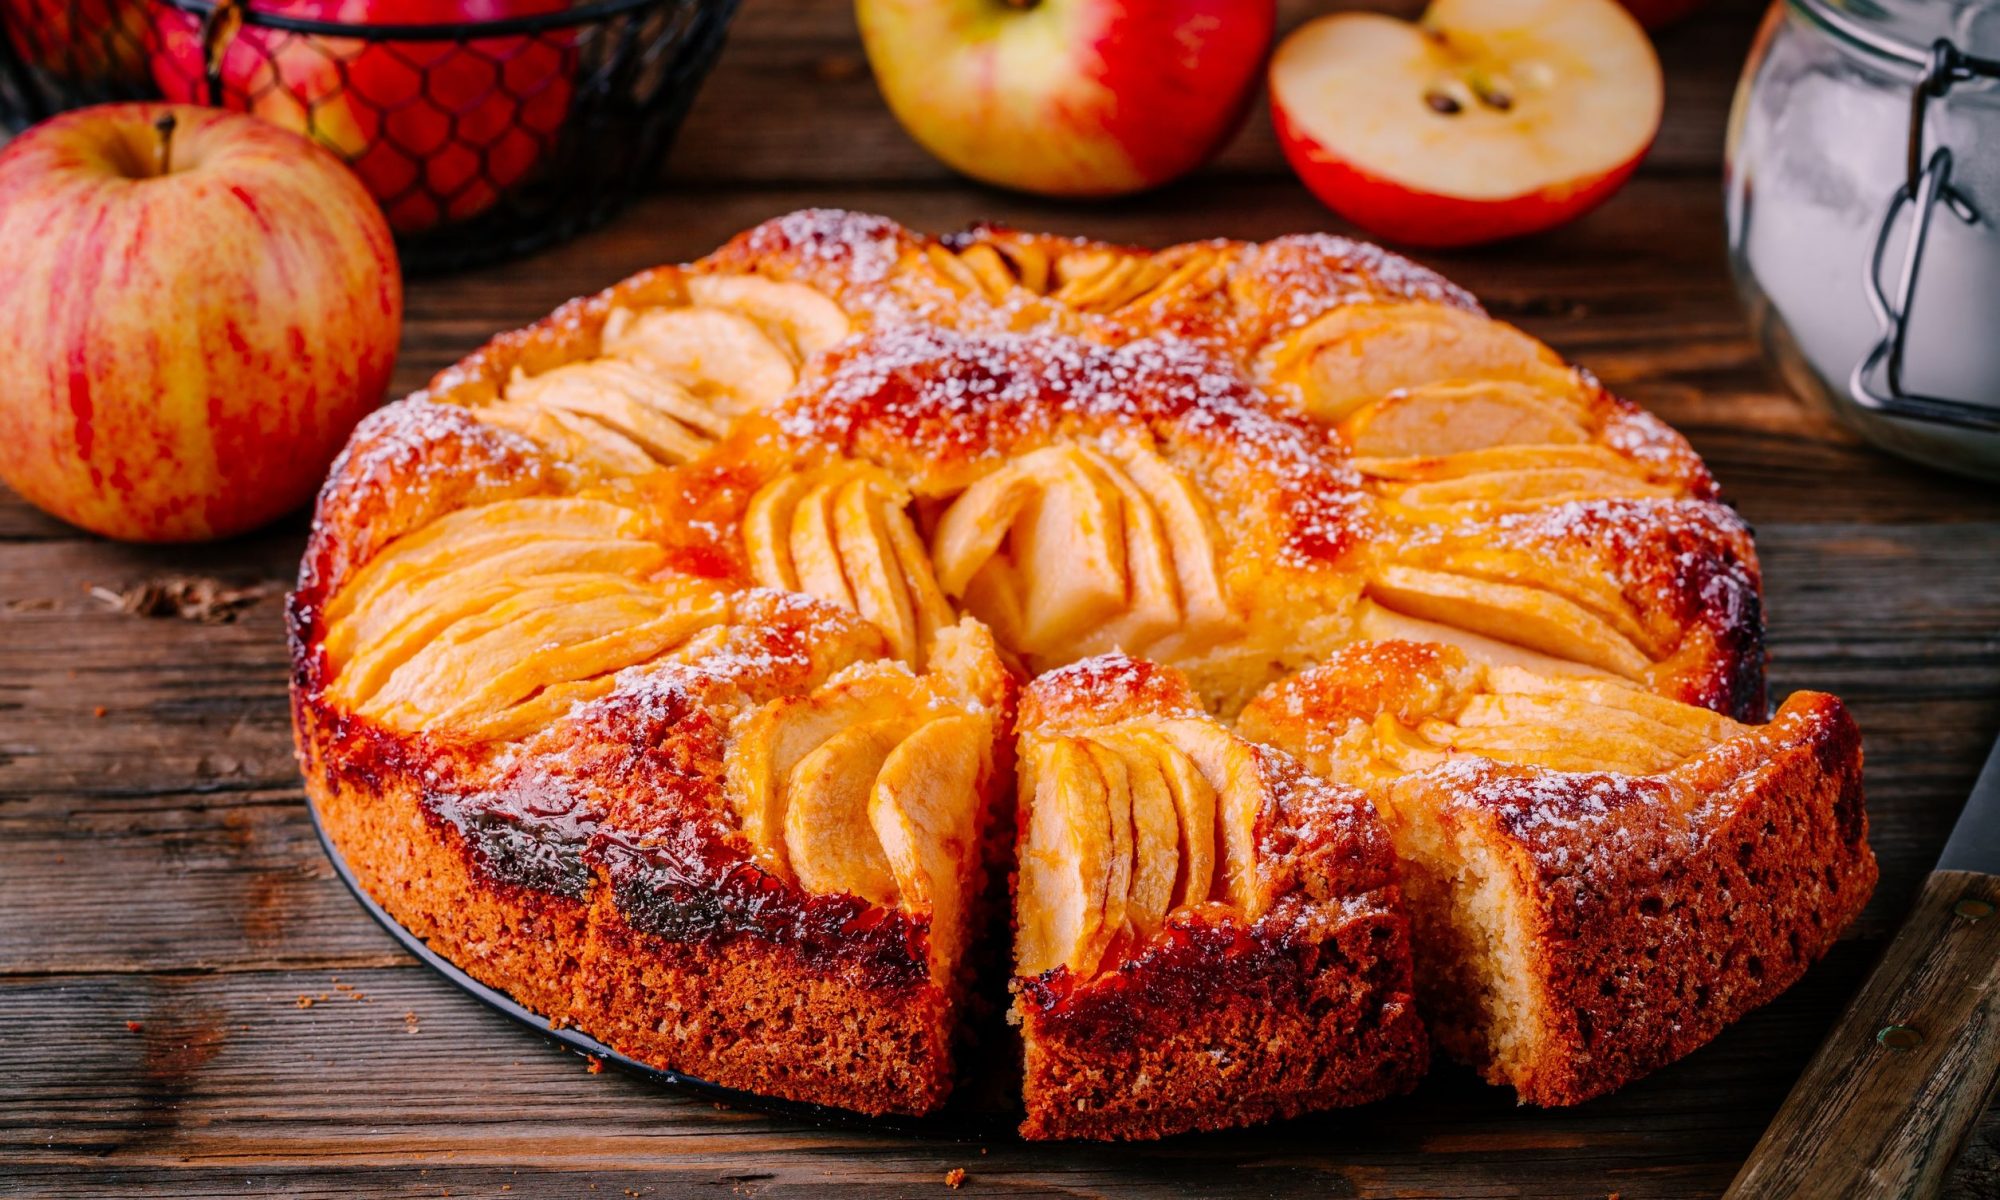 ПП рецепты из яблок без муки — 10 простых и вкусных блюд из яблок от шеф-повара